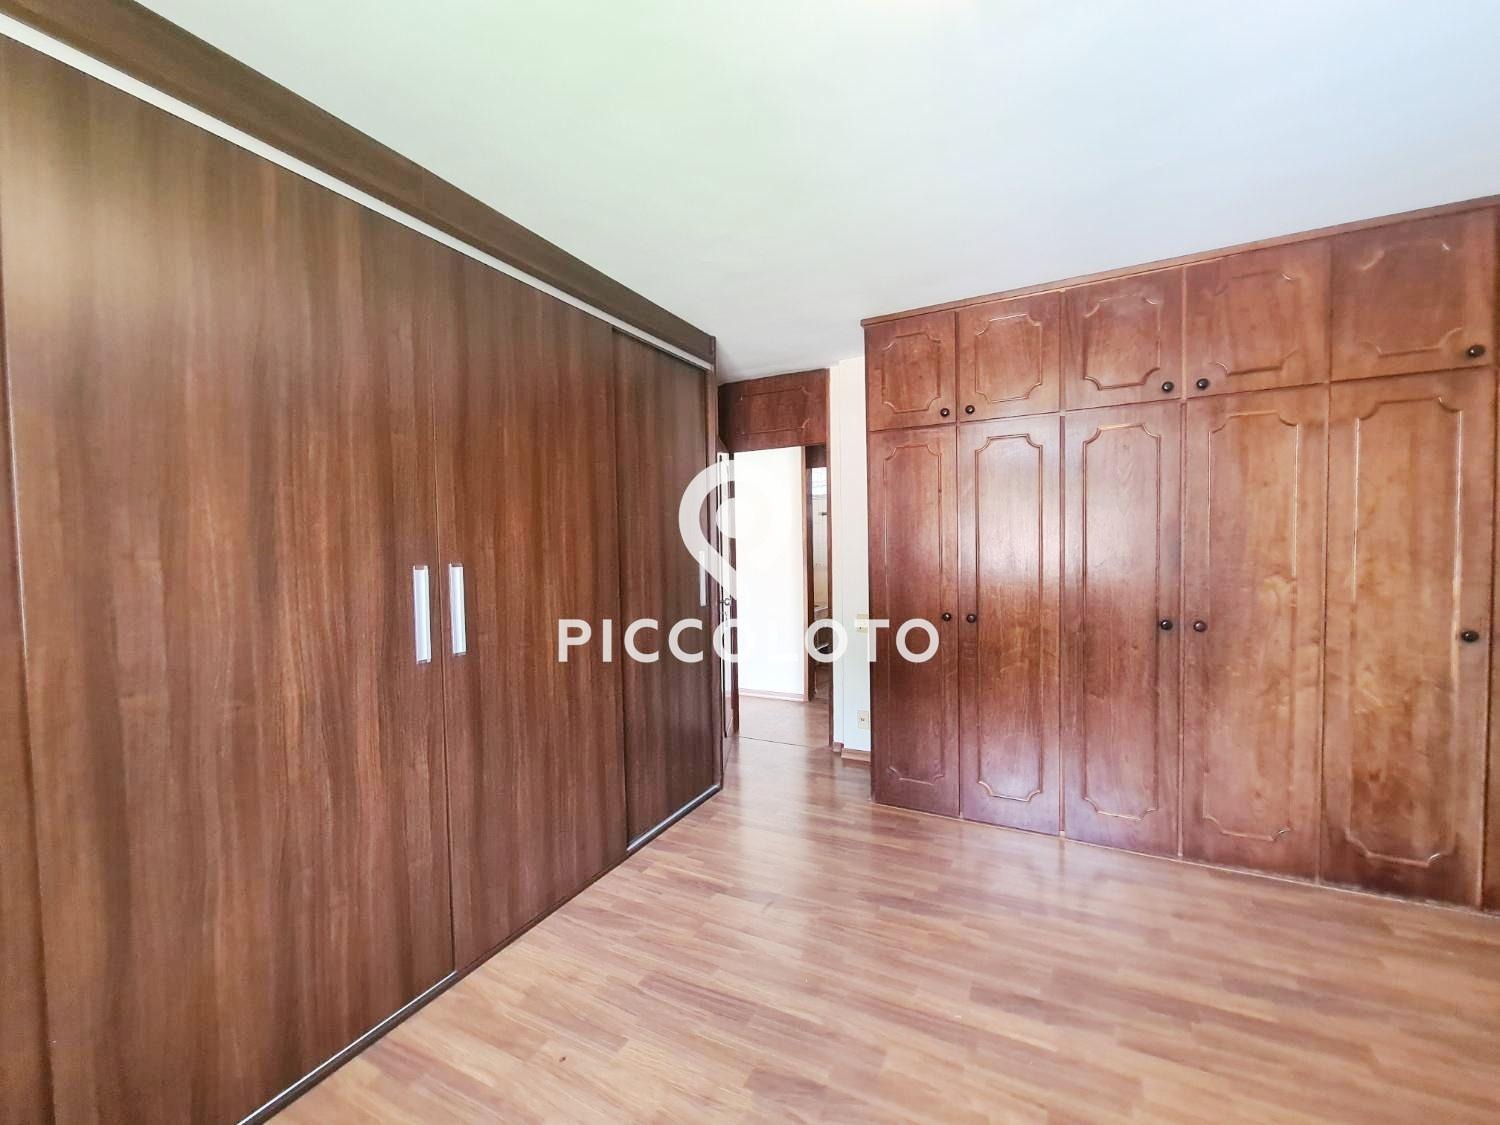 Piccoloto -Casa para alugar no Jardim das Paineiras em Campinas